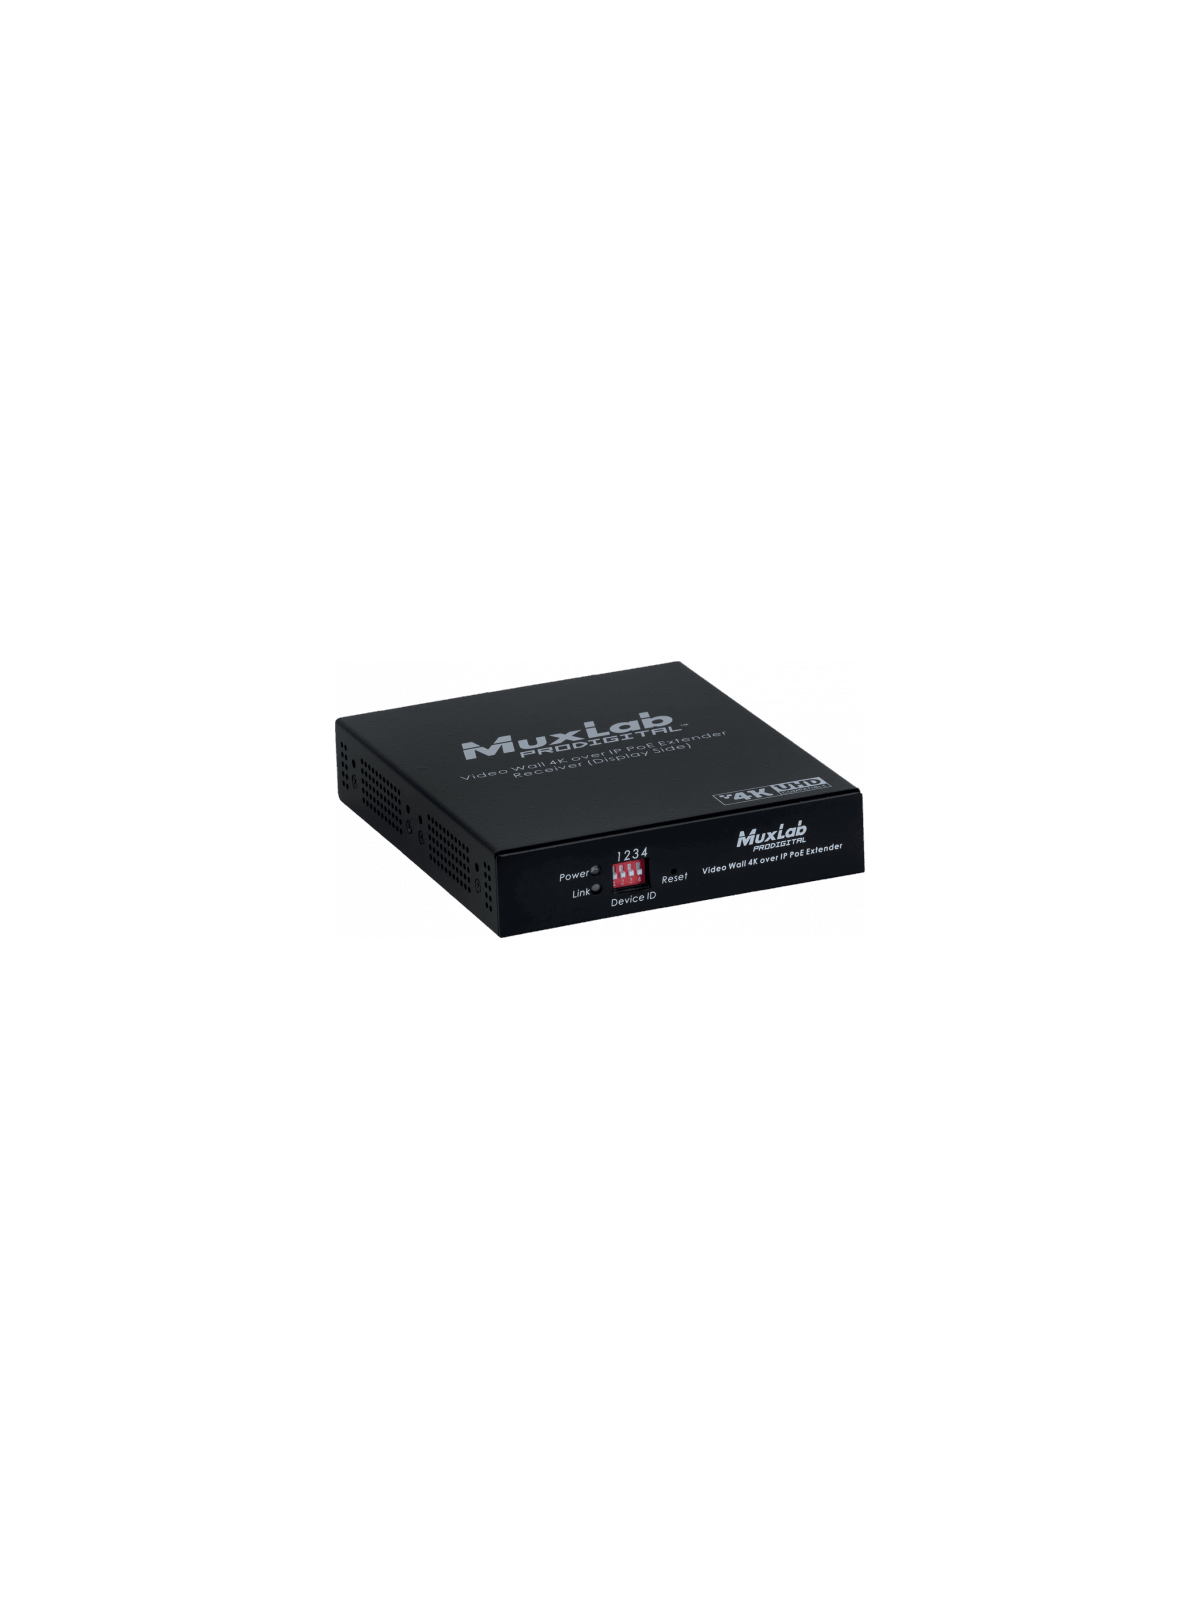 MUXLAB - Récepteur HDMI 4K